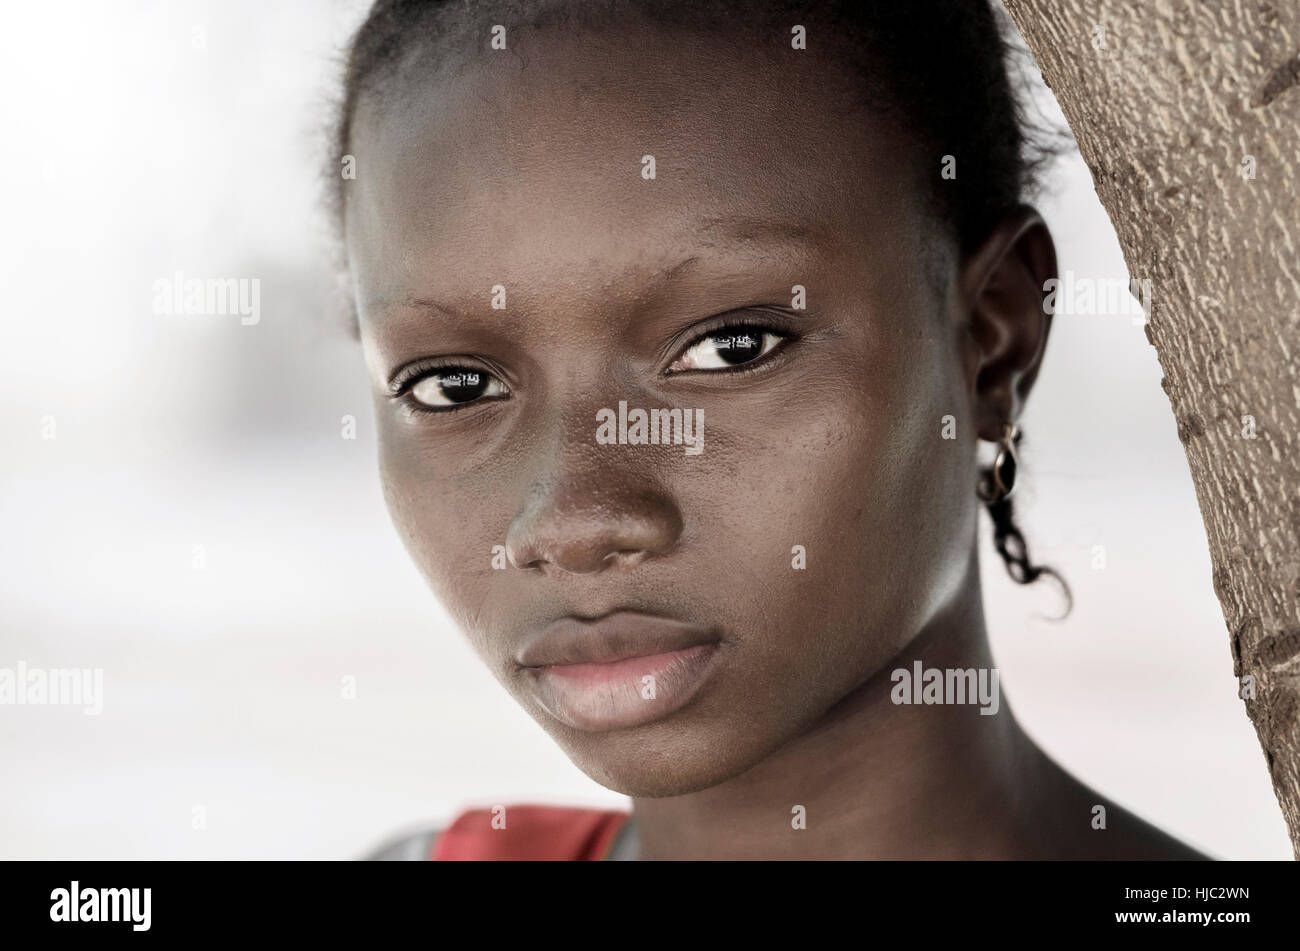 Symbole de la pauvreté de l'Afrique de tristesse - fille noire symbole. Non au racisme et la pauvreté contexte : femme noire africaine qui pose pour un shoot de mode. Banque D'Images